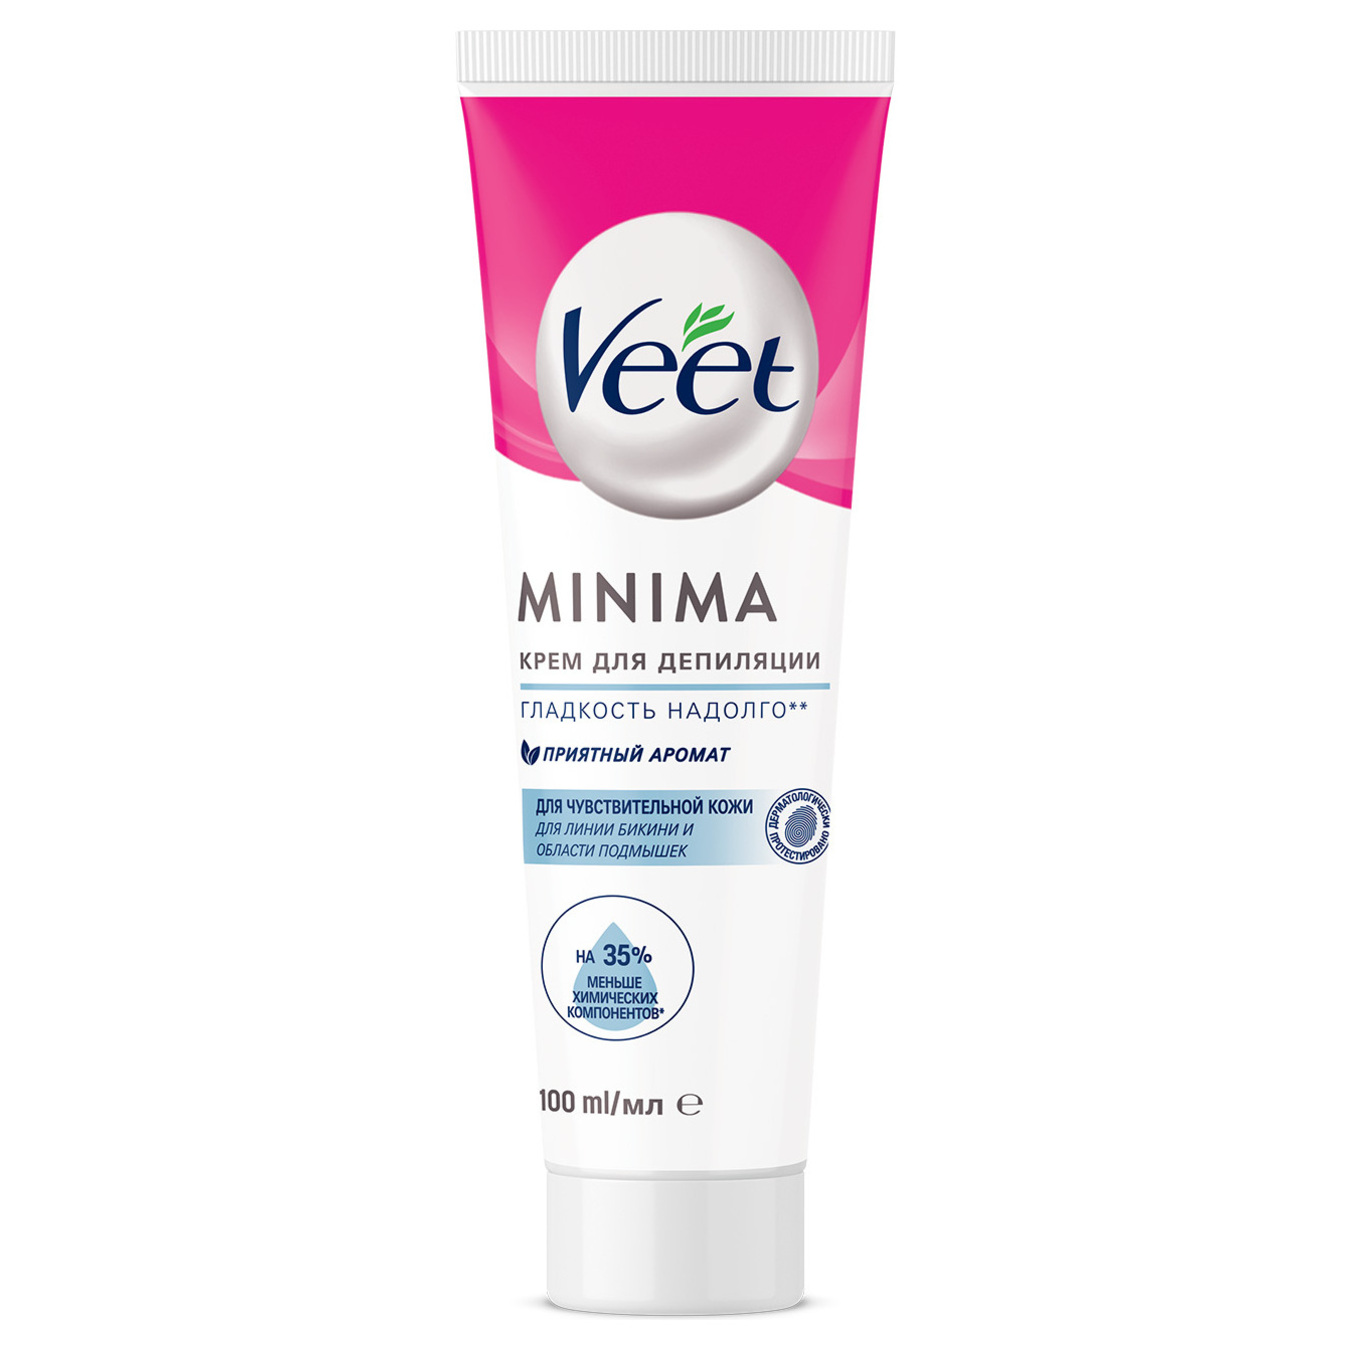 Veet hair removal cream for sensitive skin 100ml 2